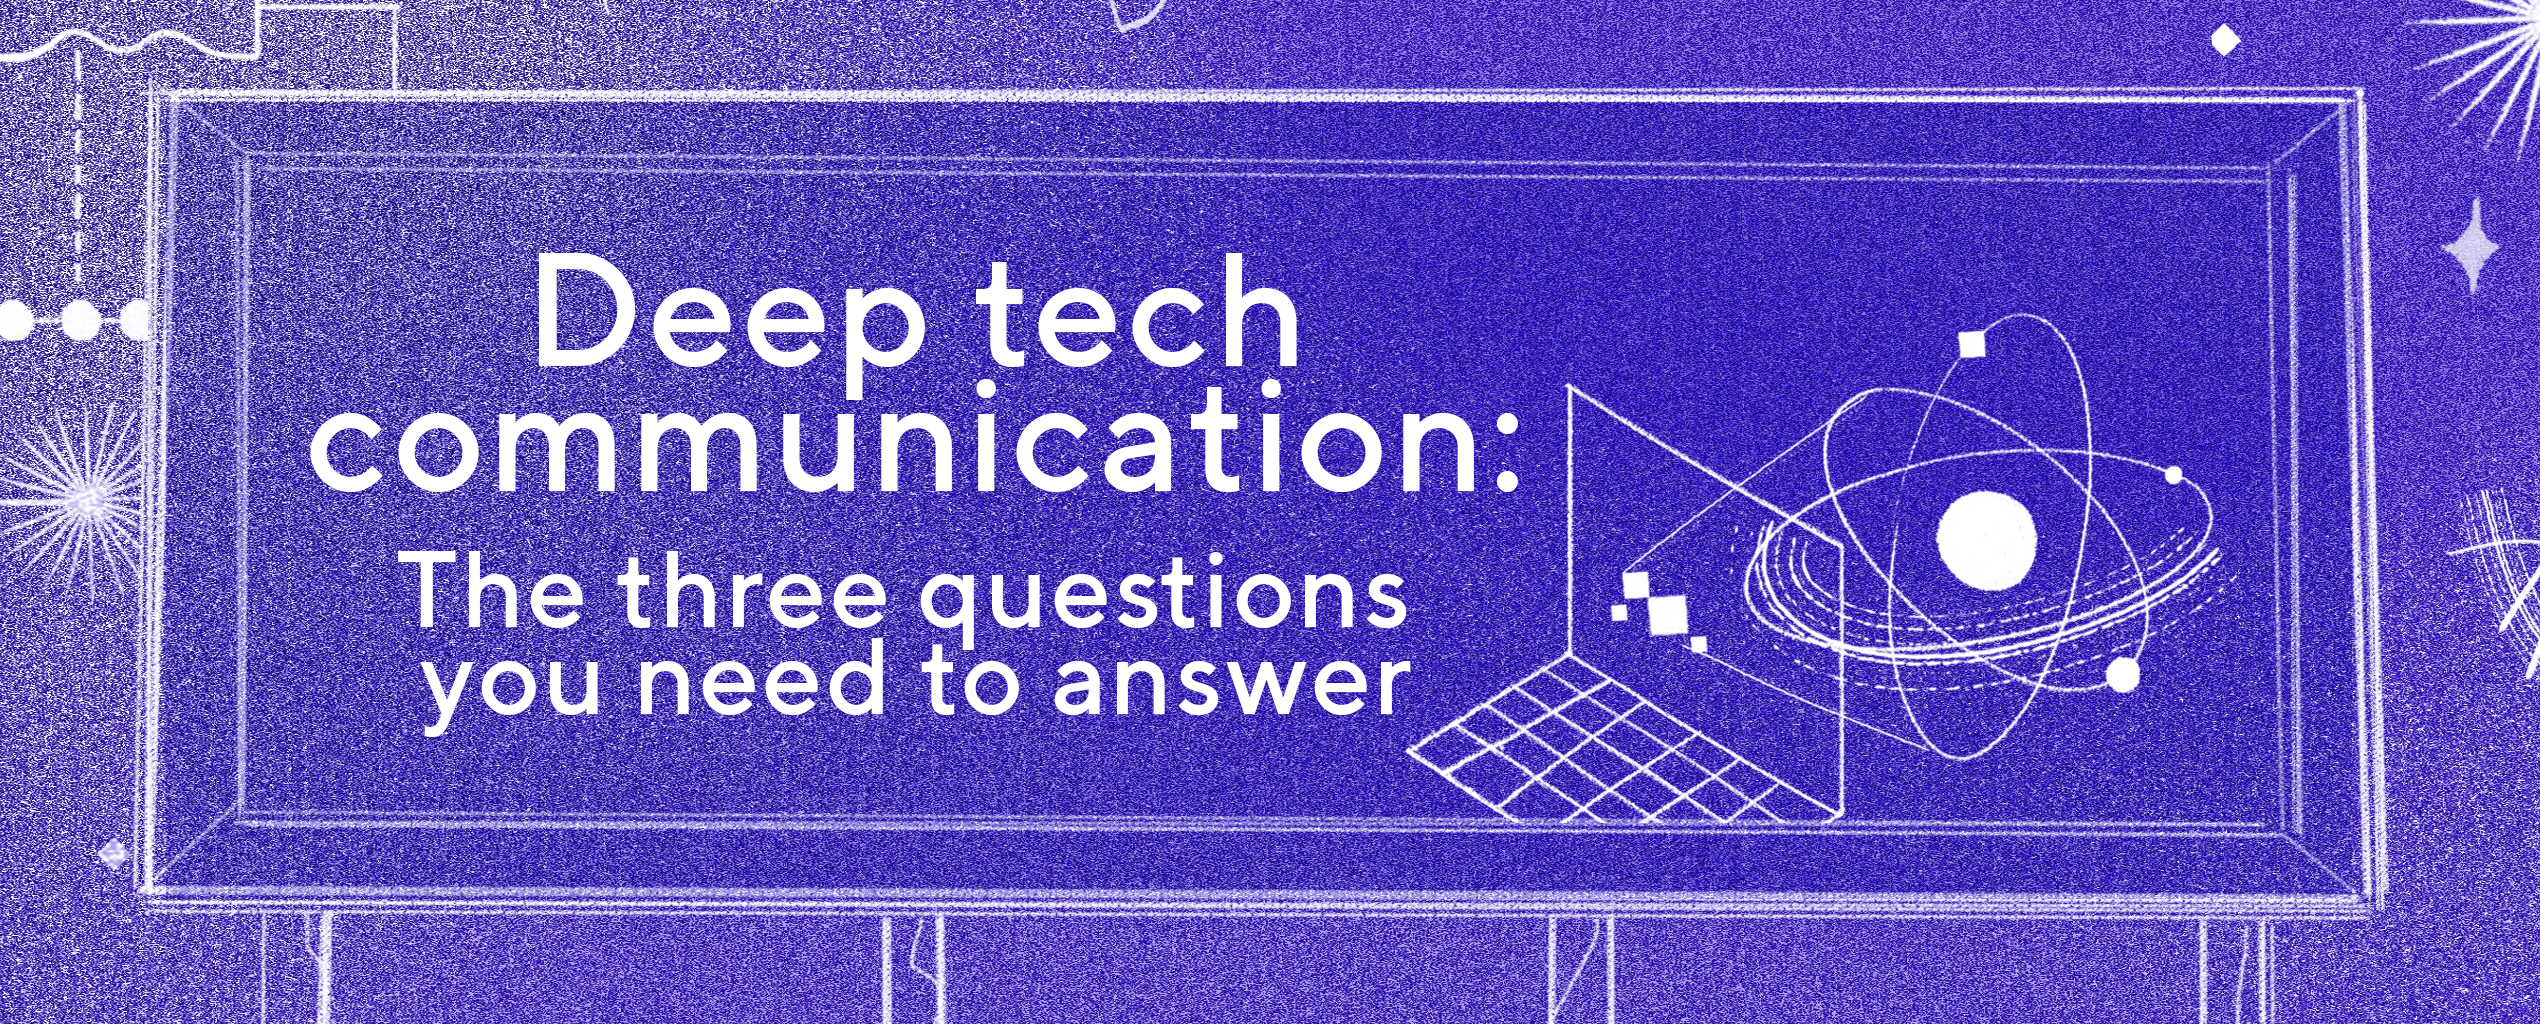 La communication dans le domaine de la deeptech en trois questions